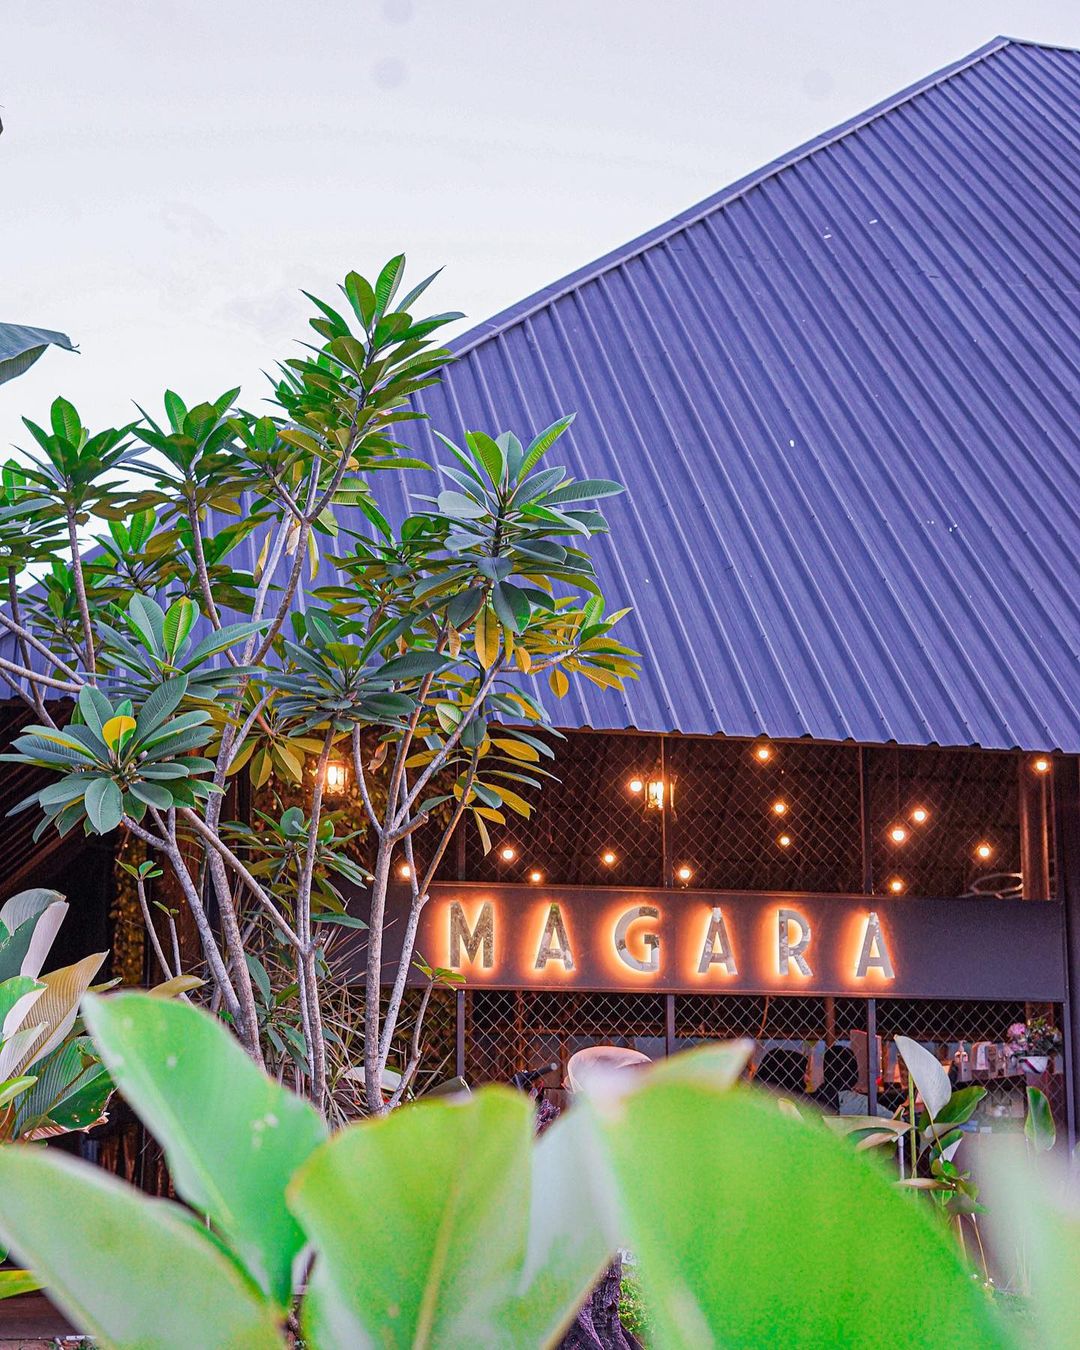 Magara Cafe And Carwash Samarinda